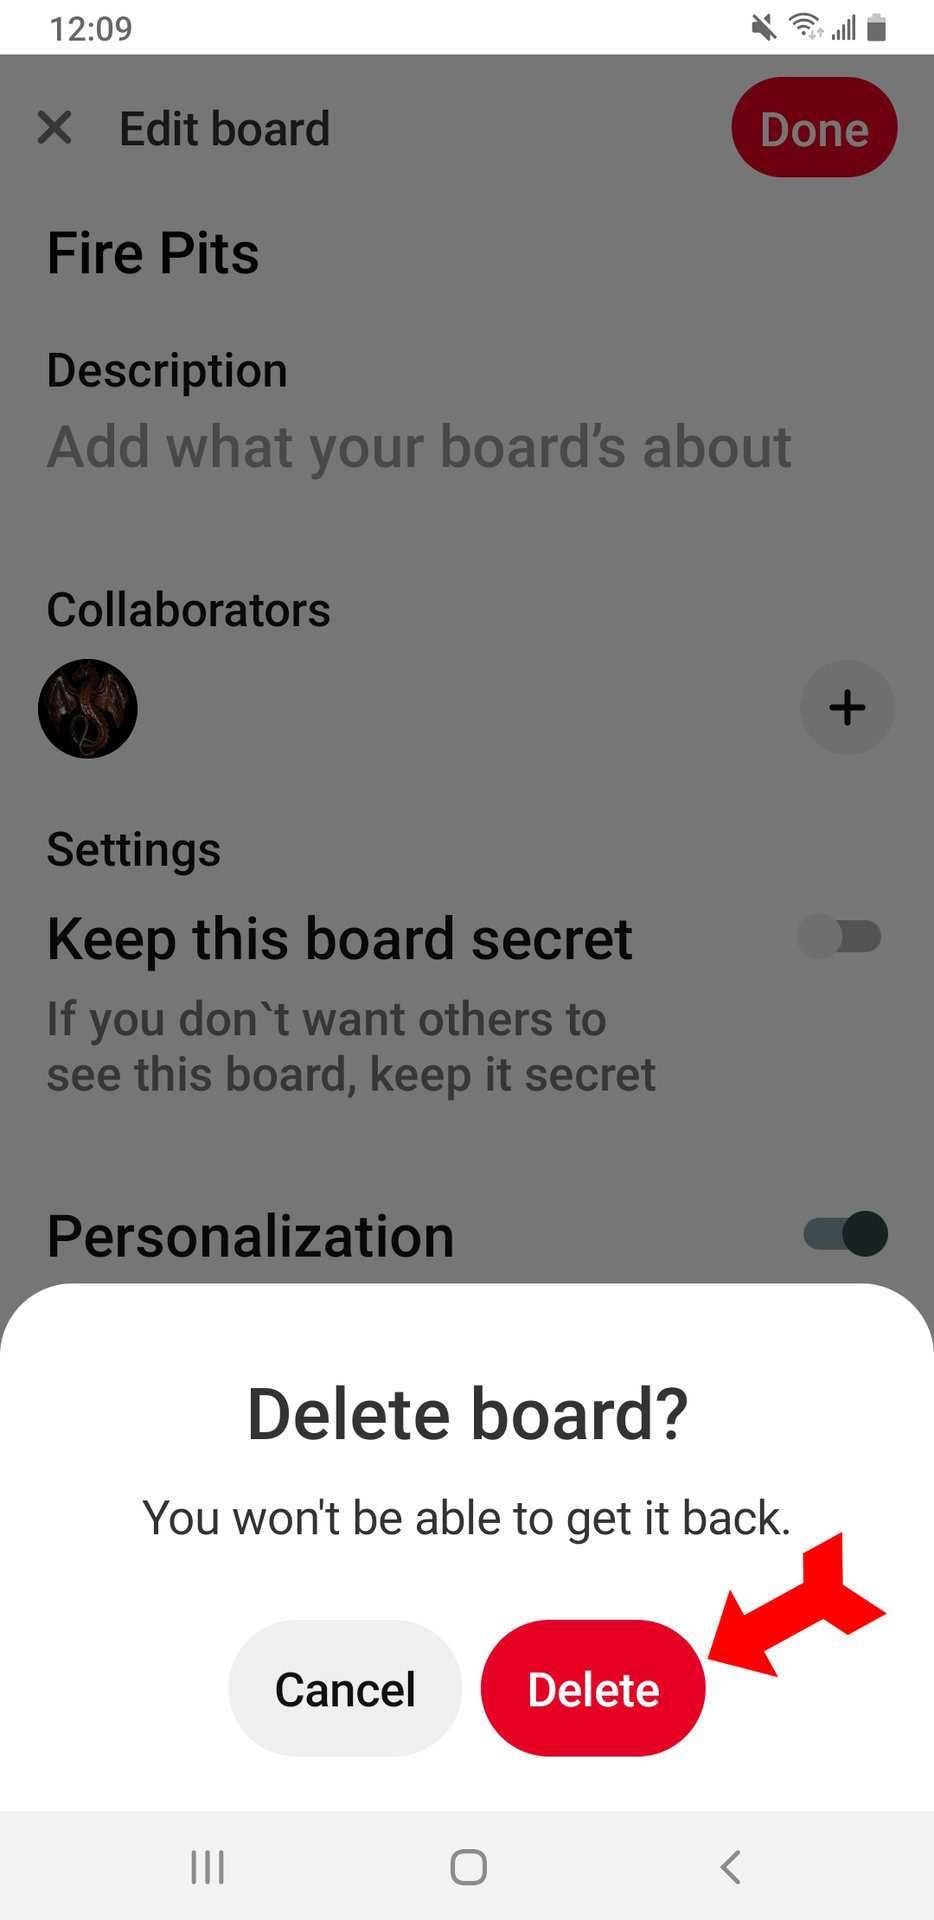 App Delete Board Confirm Delete